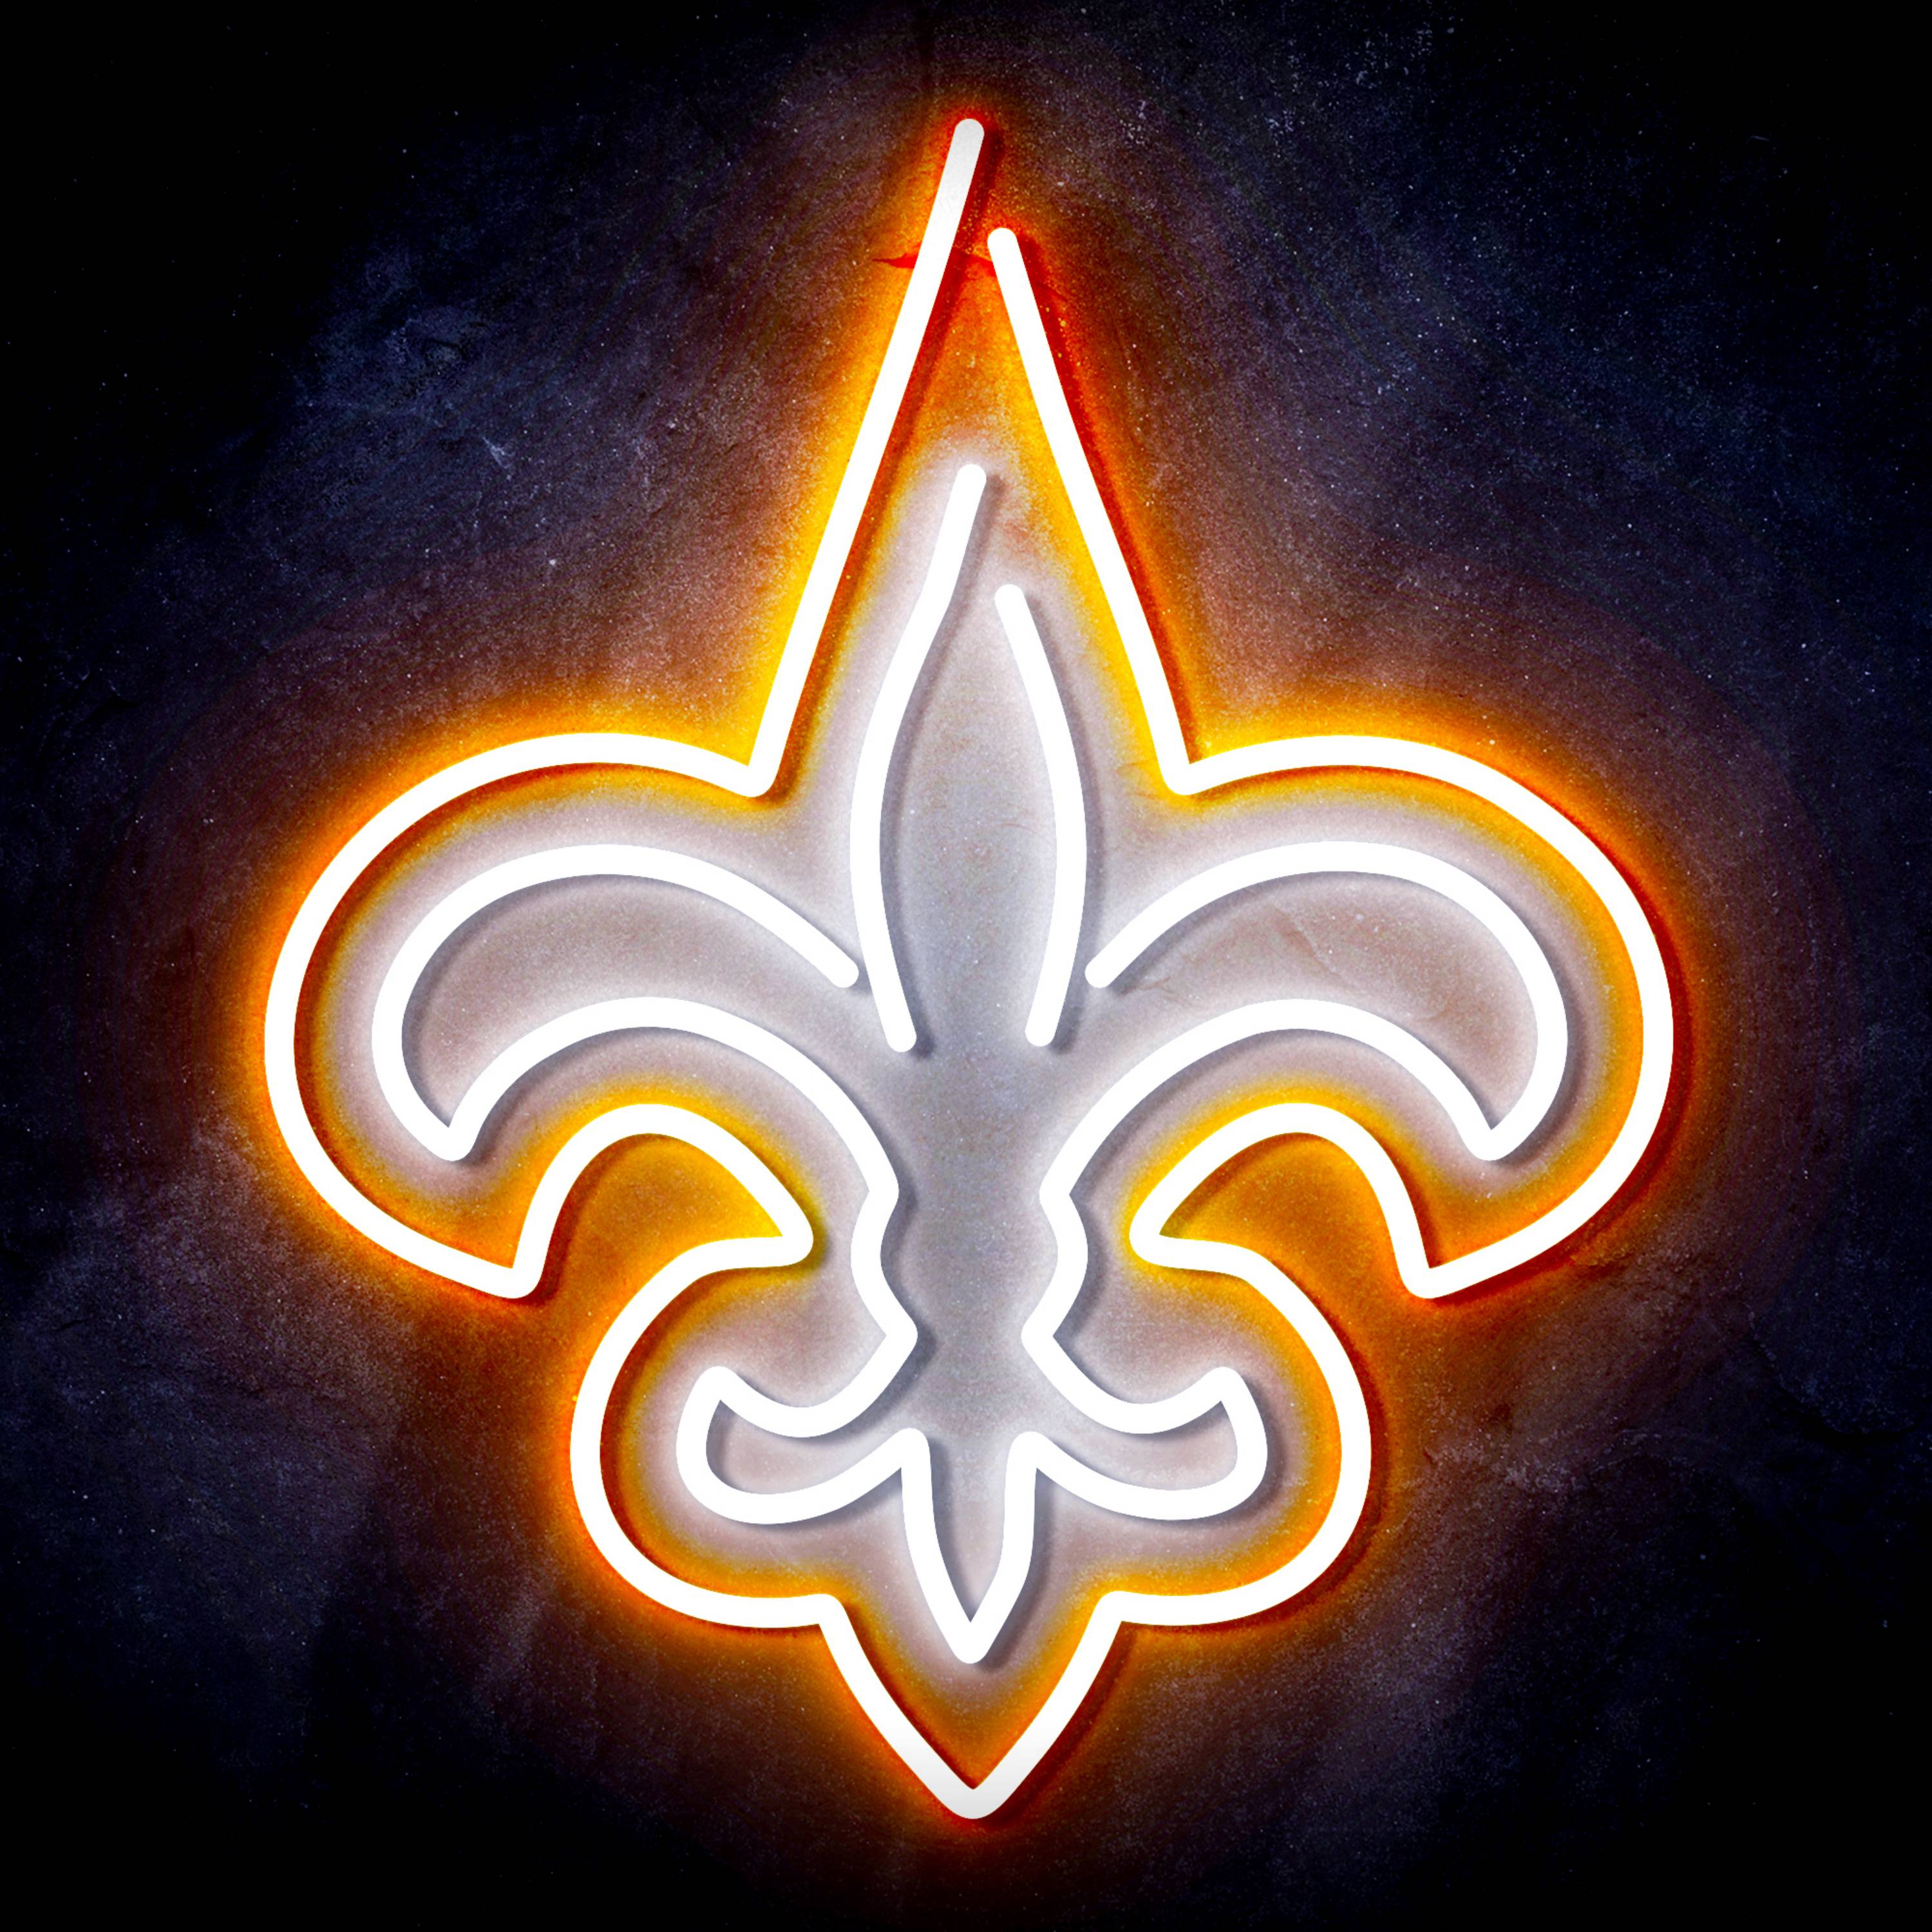 NFL New Orleans Saints LED Neon Sign